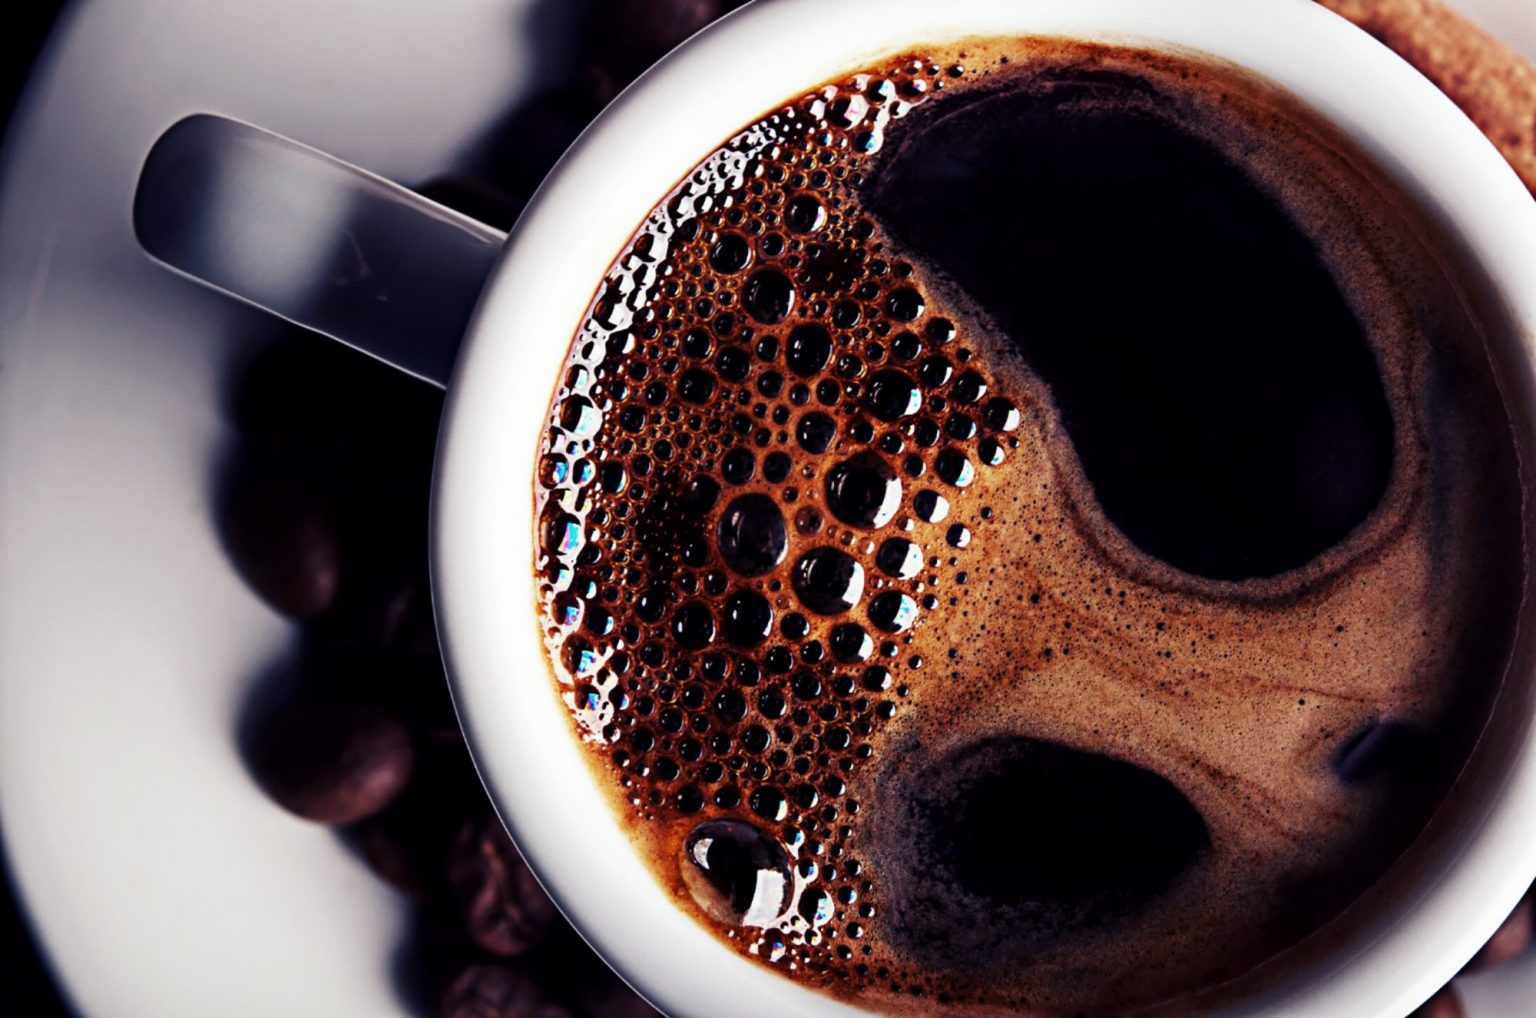 Nghiên cứu mới nhất công bố những kết quả bất ngờ của cà phê với tim mạch và huyết áp - Ảnh 3.